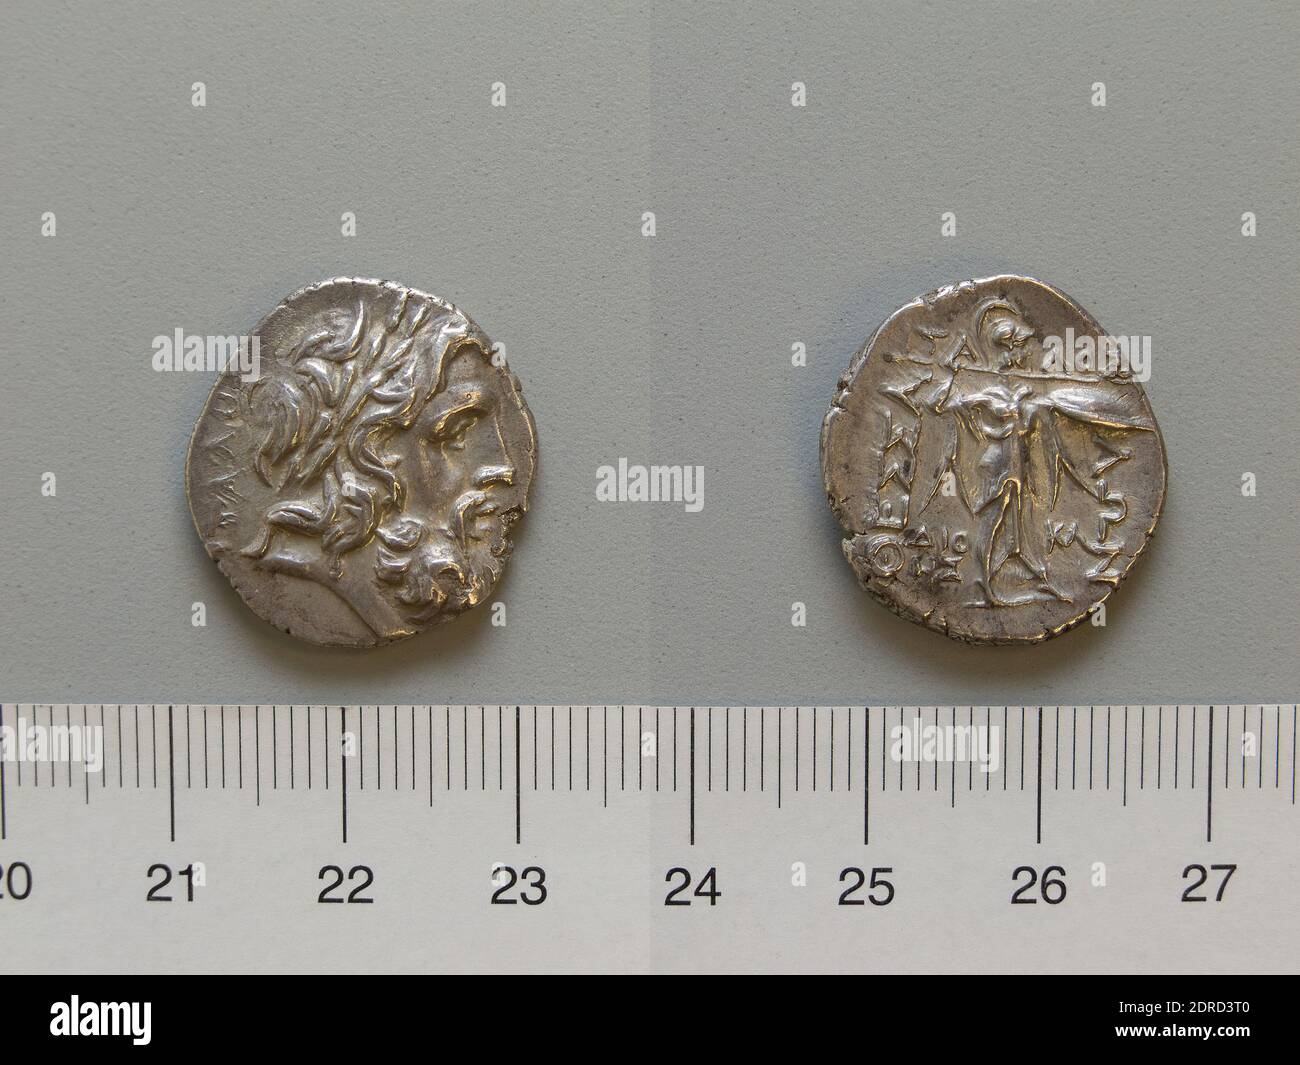 Münzstätte: Thessalien, Münze von Thessalien, 196–27 v. Chr., Silber, 6.12 g, 12:00, 22 mm, hergestellt in Thessalien, Griechisch, 2.–1. Jahrhundert v. Chr., Numismatik Stockfoto